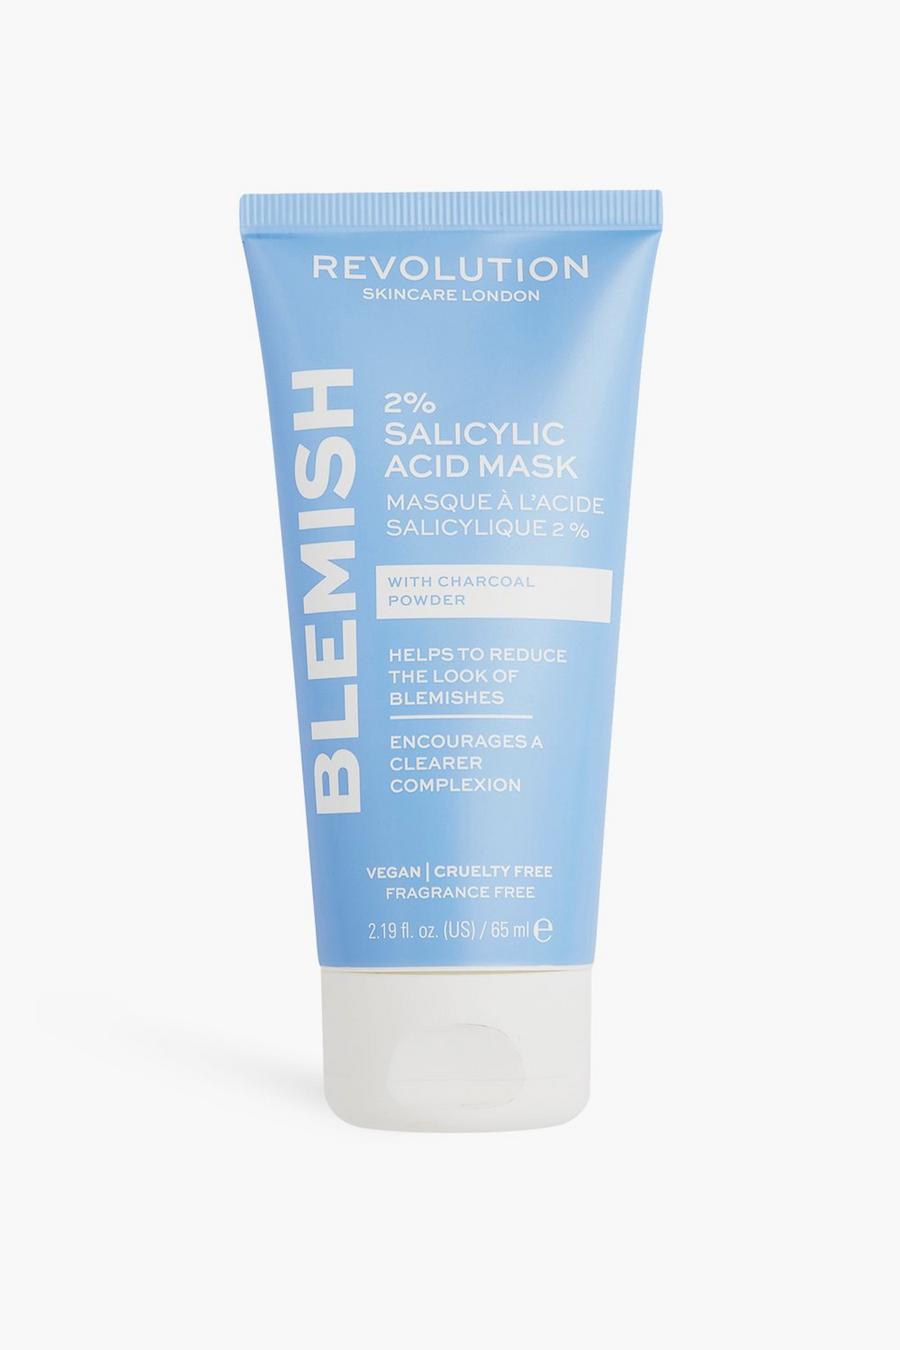 שקוף clear מסכת חומצה סליצילית 2% של Revolution Skincare